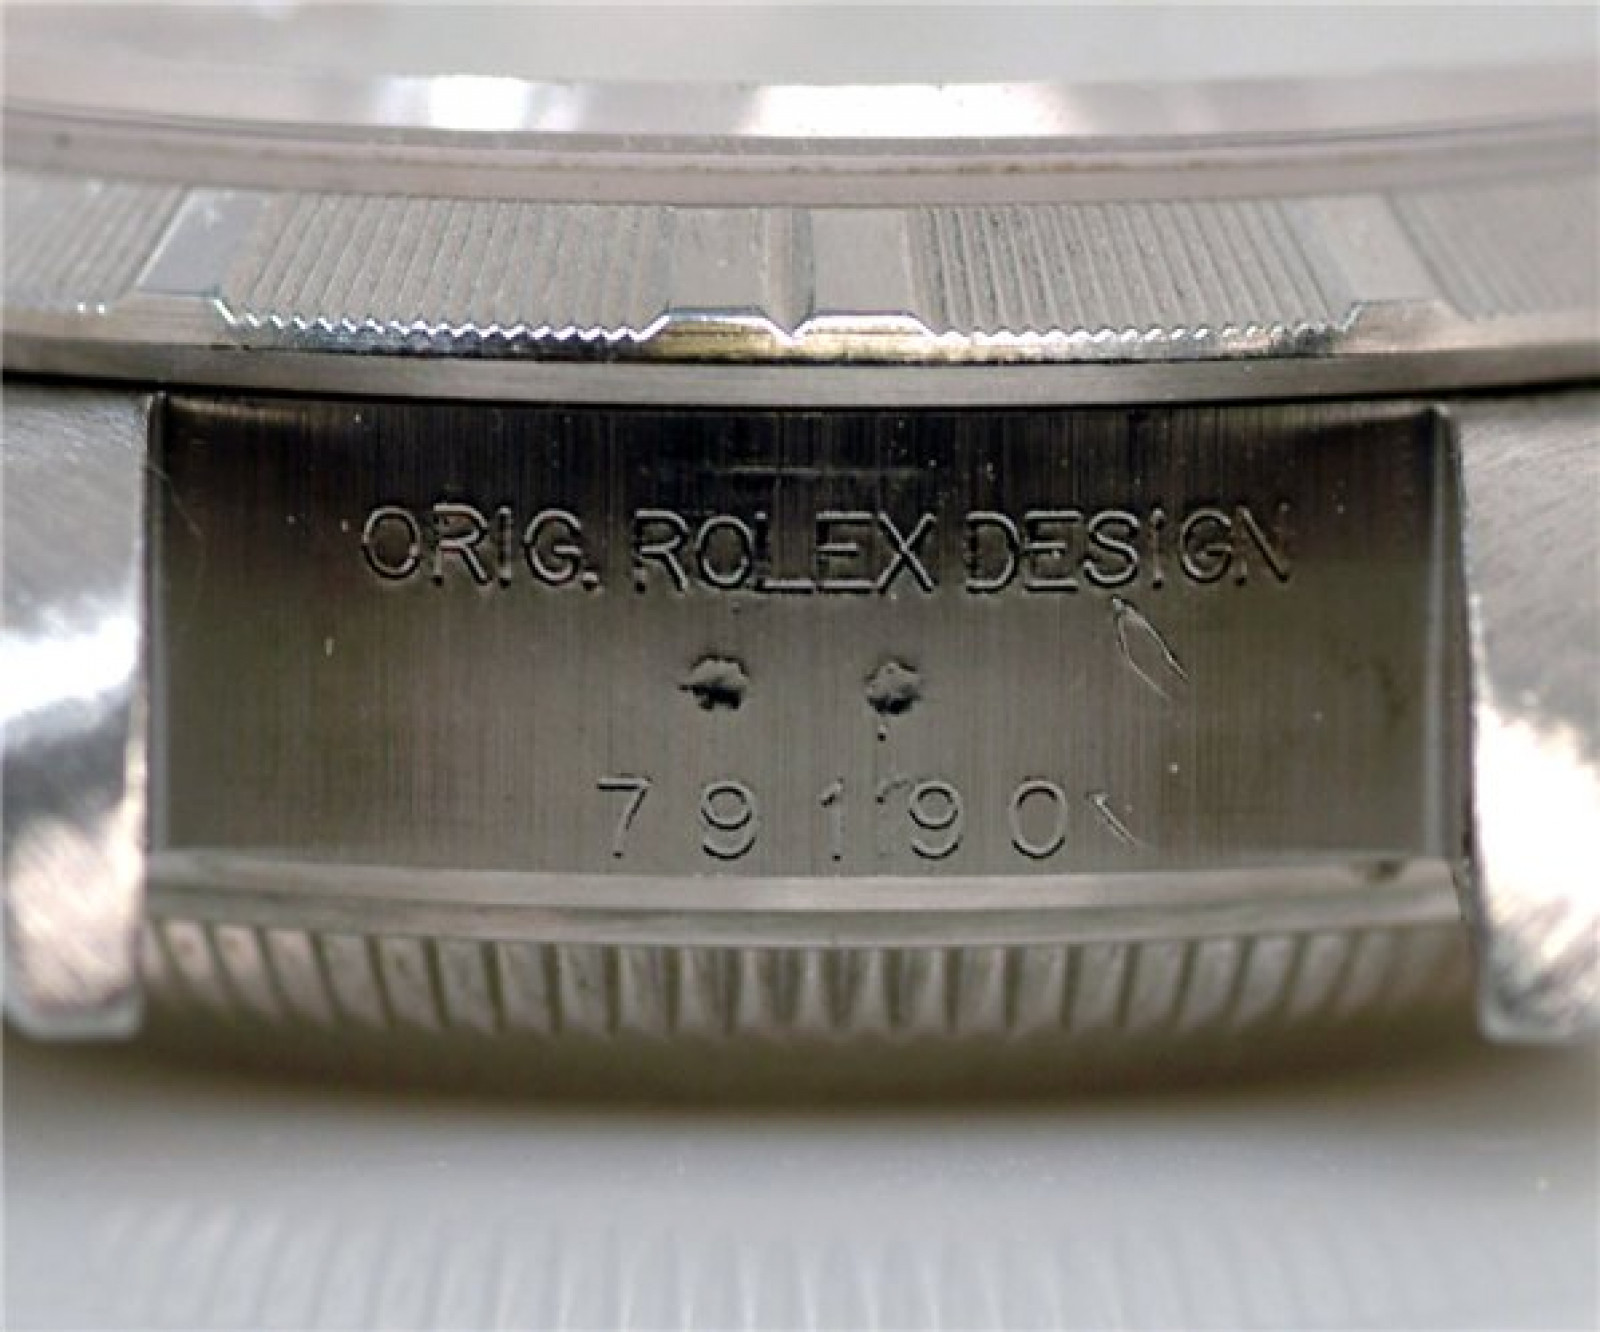 Rolex Date 79190 Steel White 2005